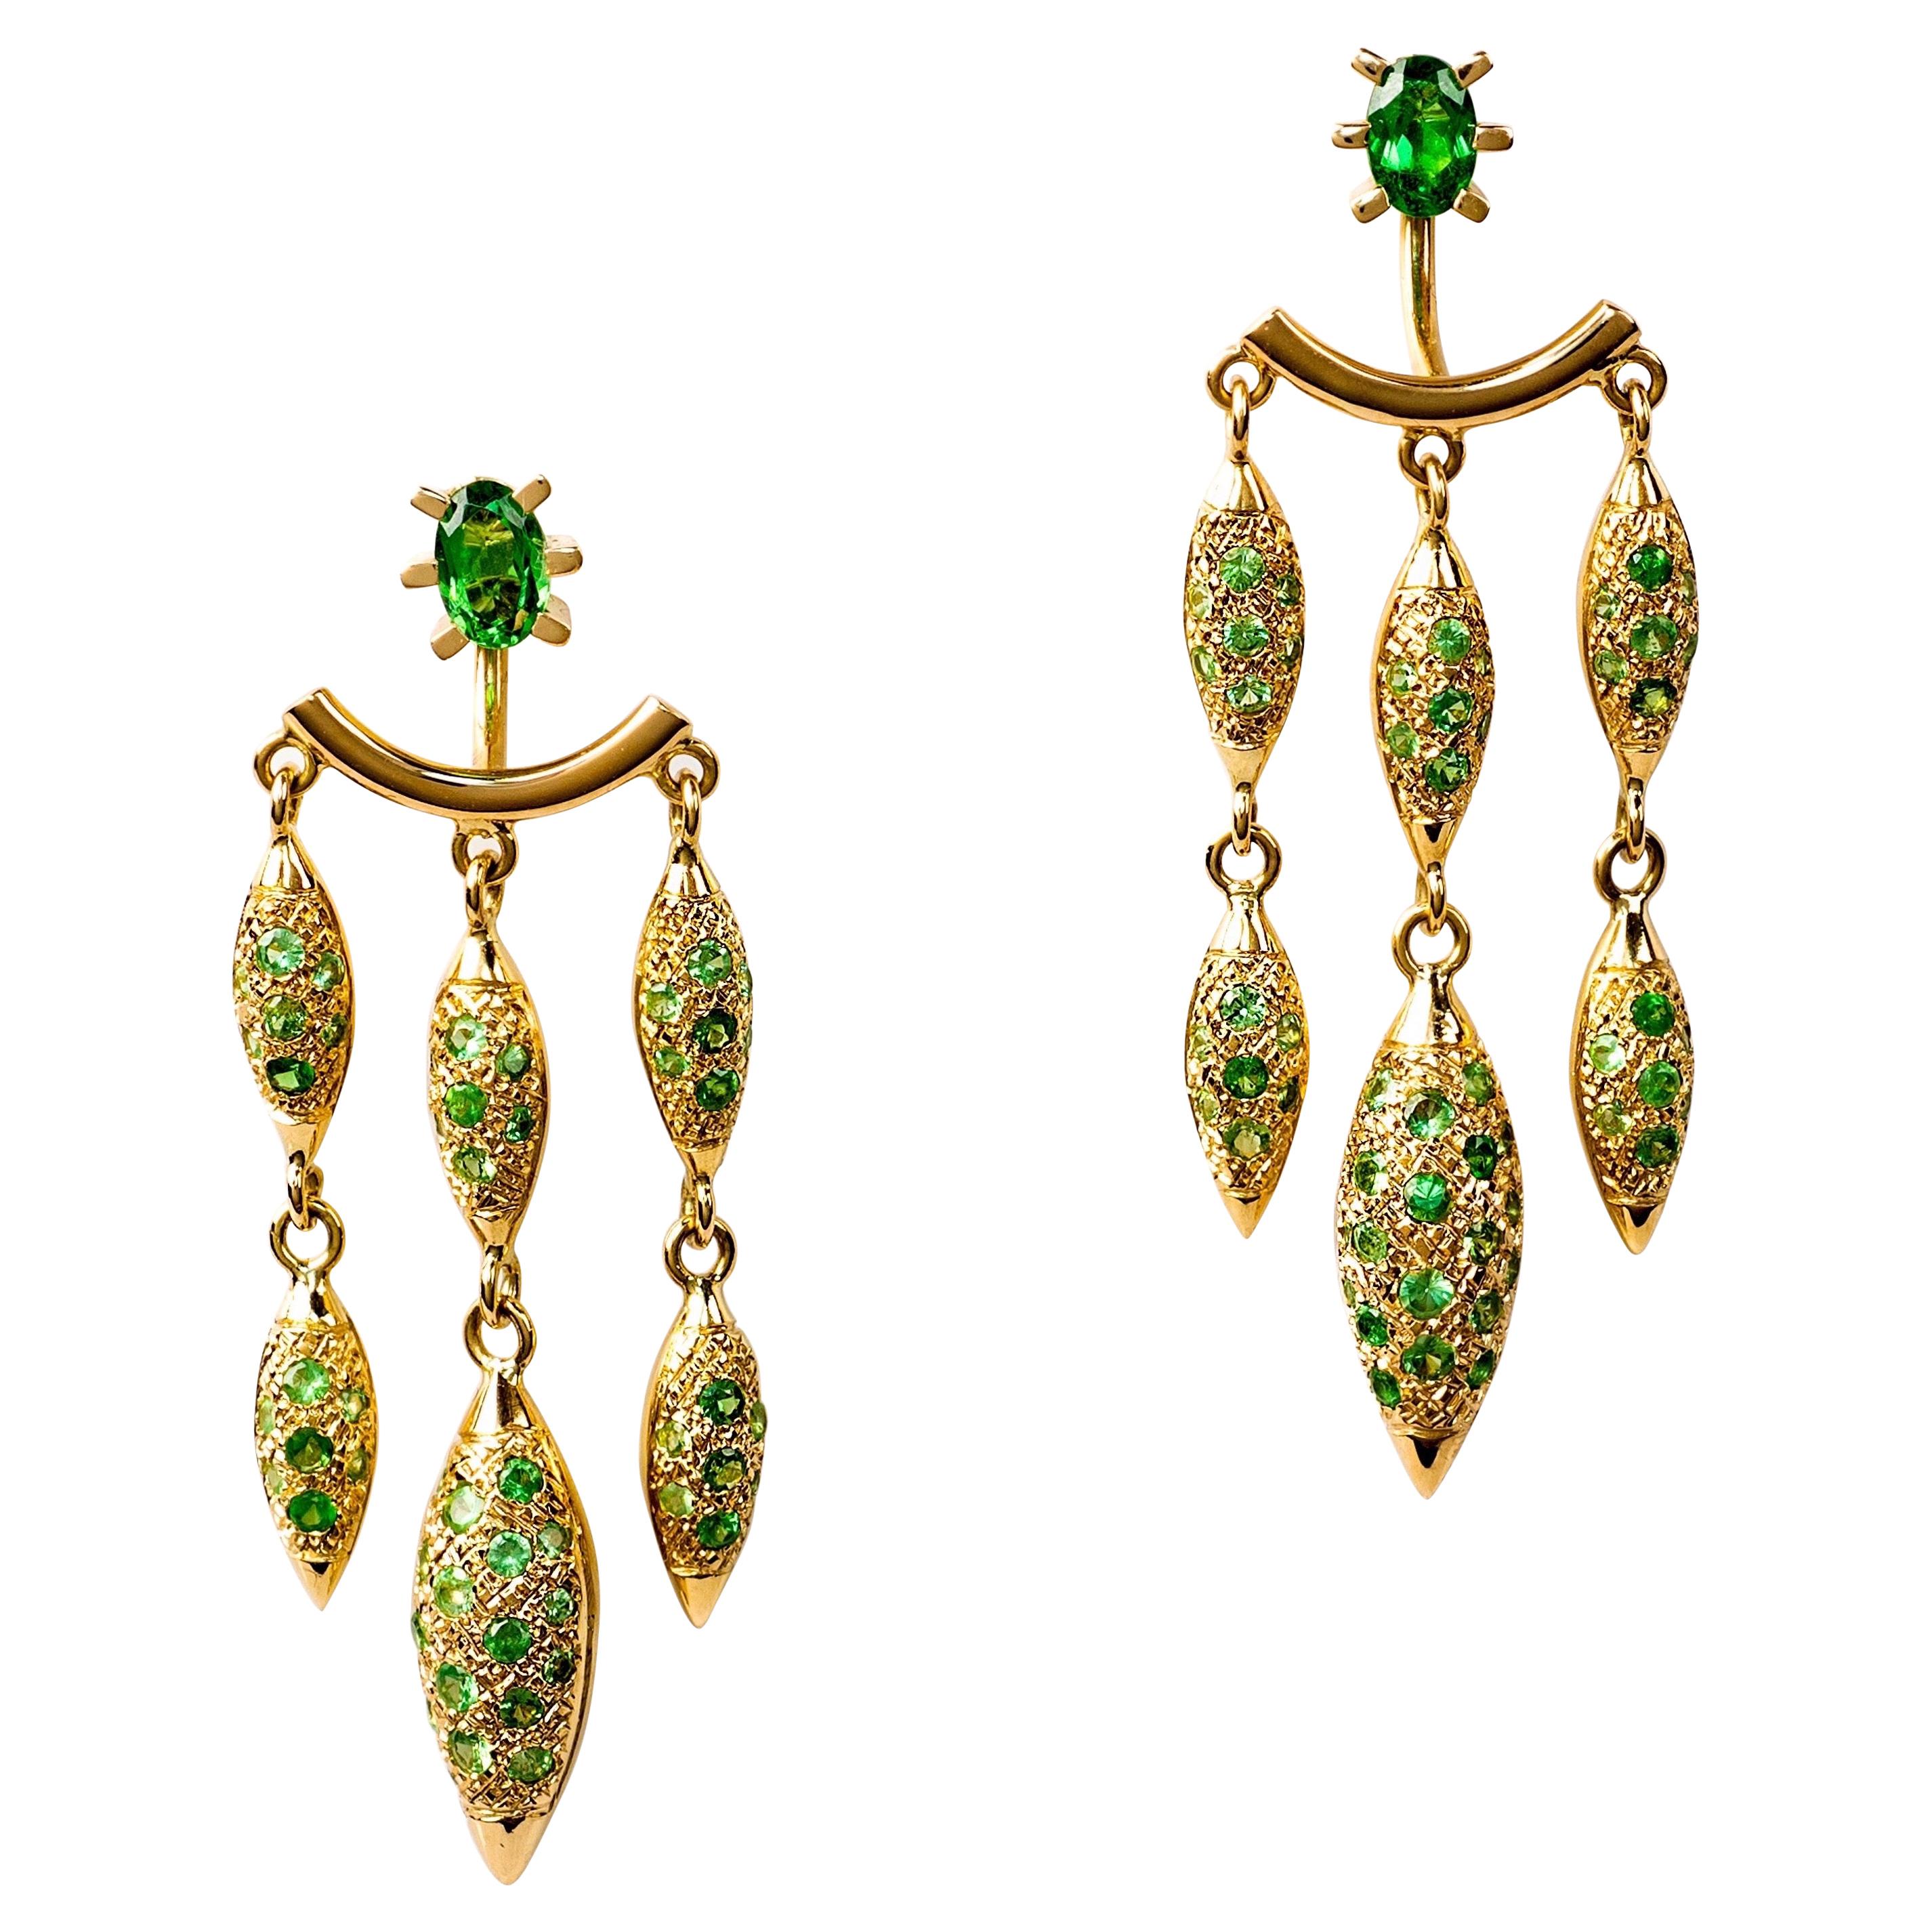 Contemporary 18K Gold & Green Tsavorite Garnet Chandelier Earrings /Ear Jackets